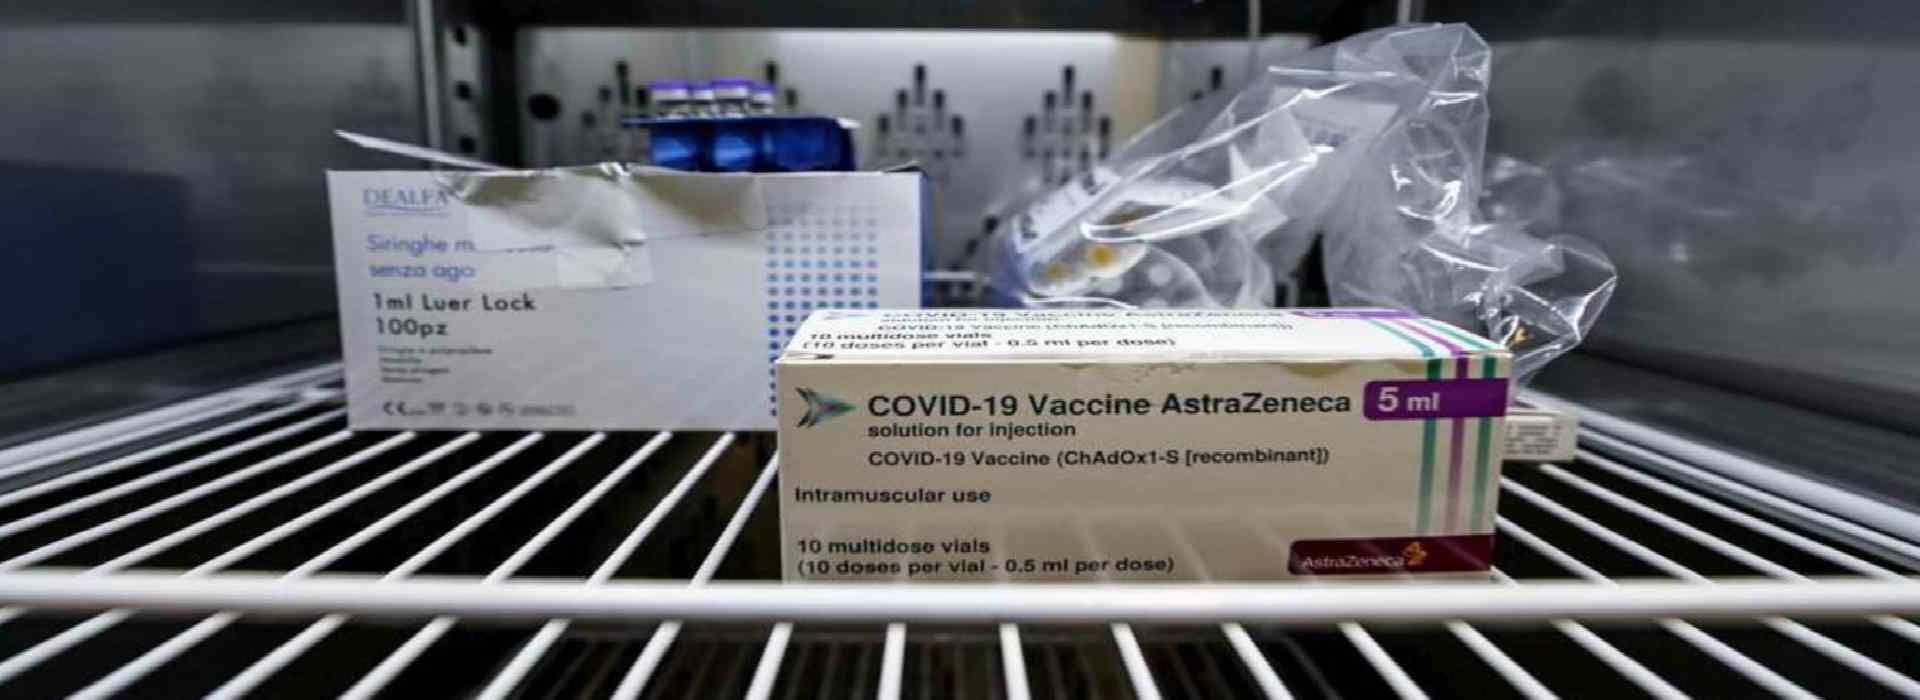 Vaccino AstraZeneca: muore operatore sanitario poco dopo la somministrazione